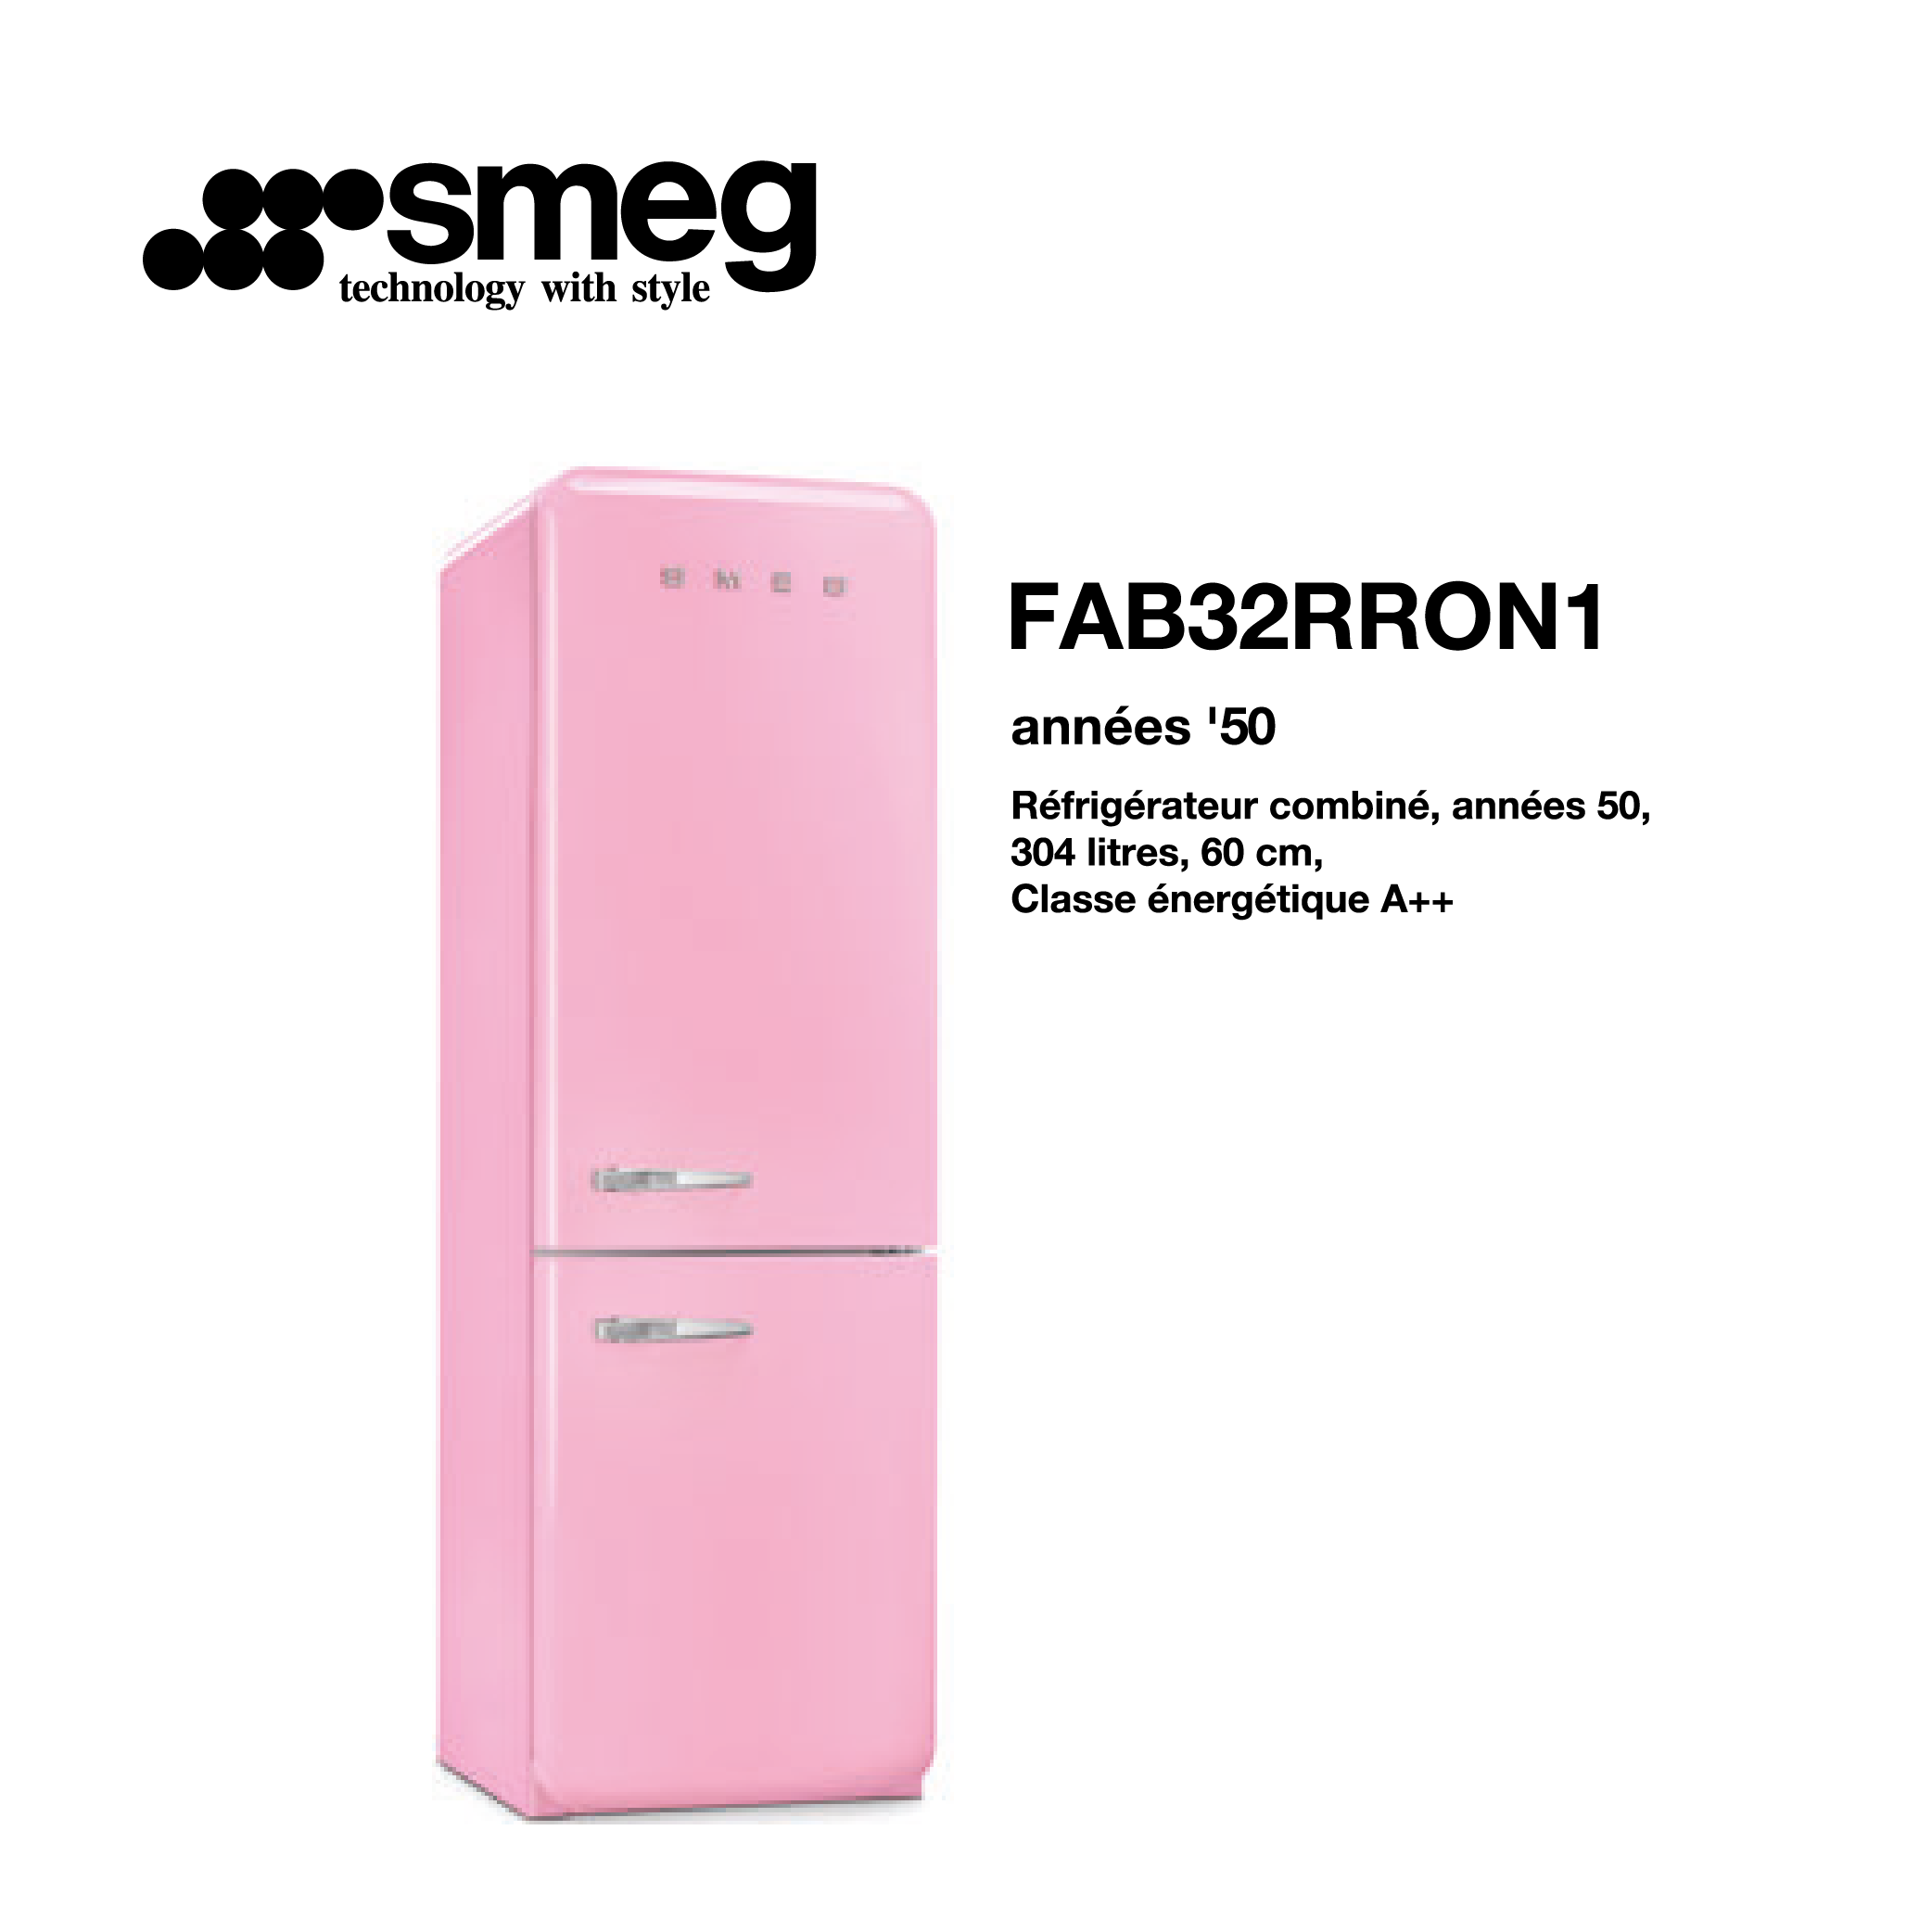 Réfrigérateur combiné smeg 304 litre – 60cm couleur Rose FAB32RRON1